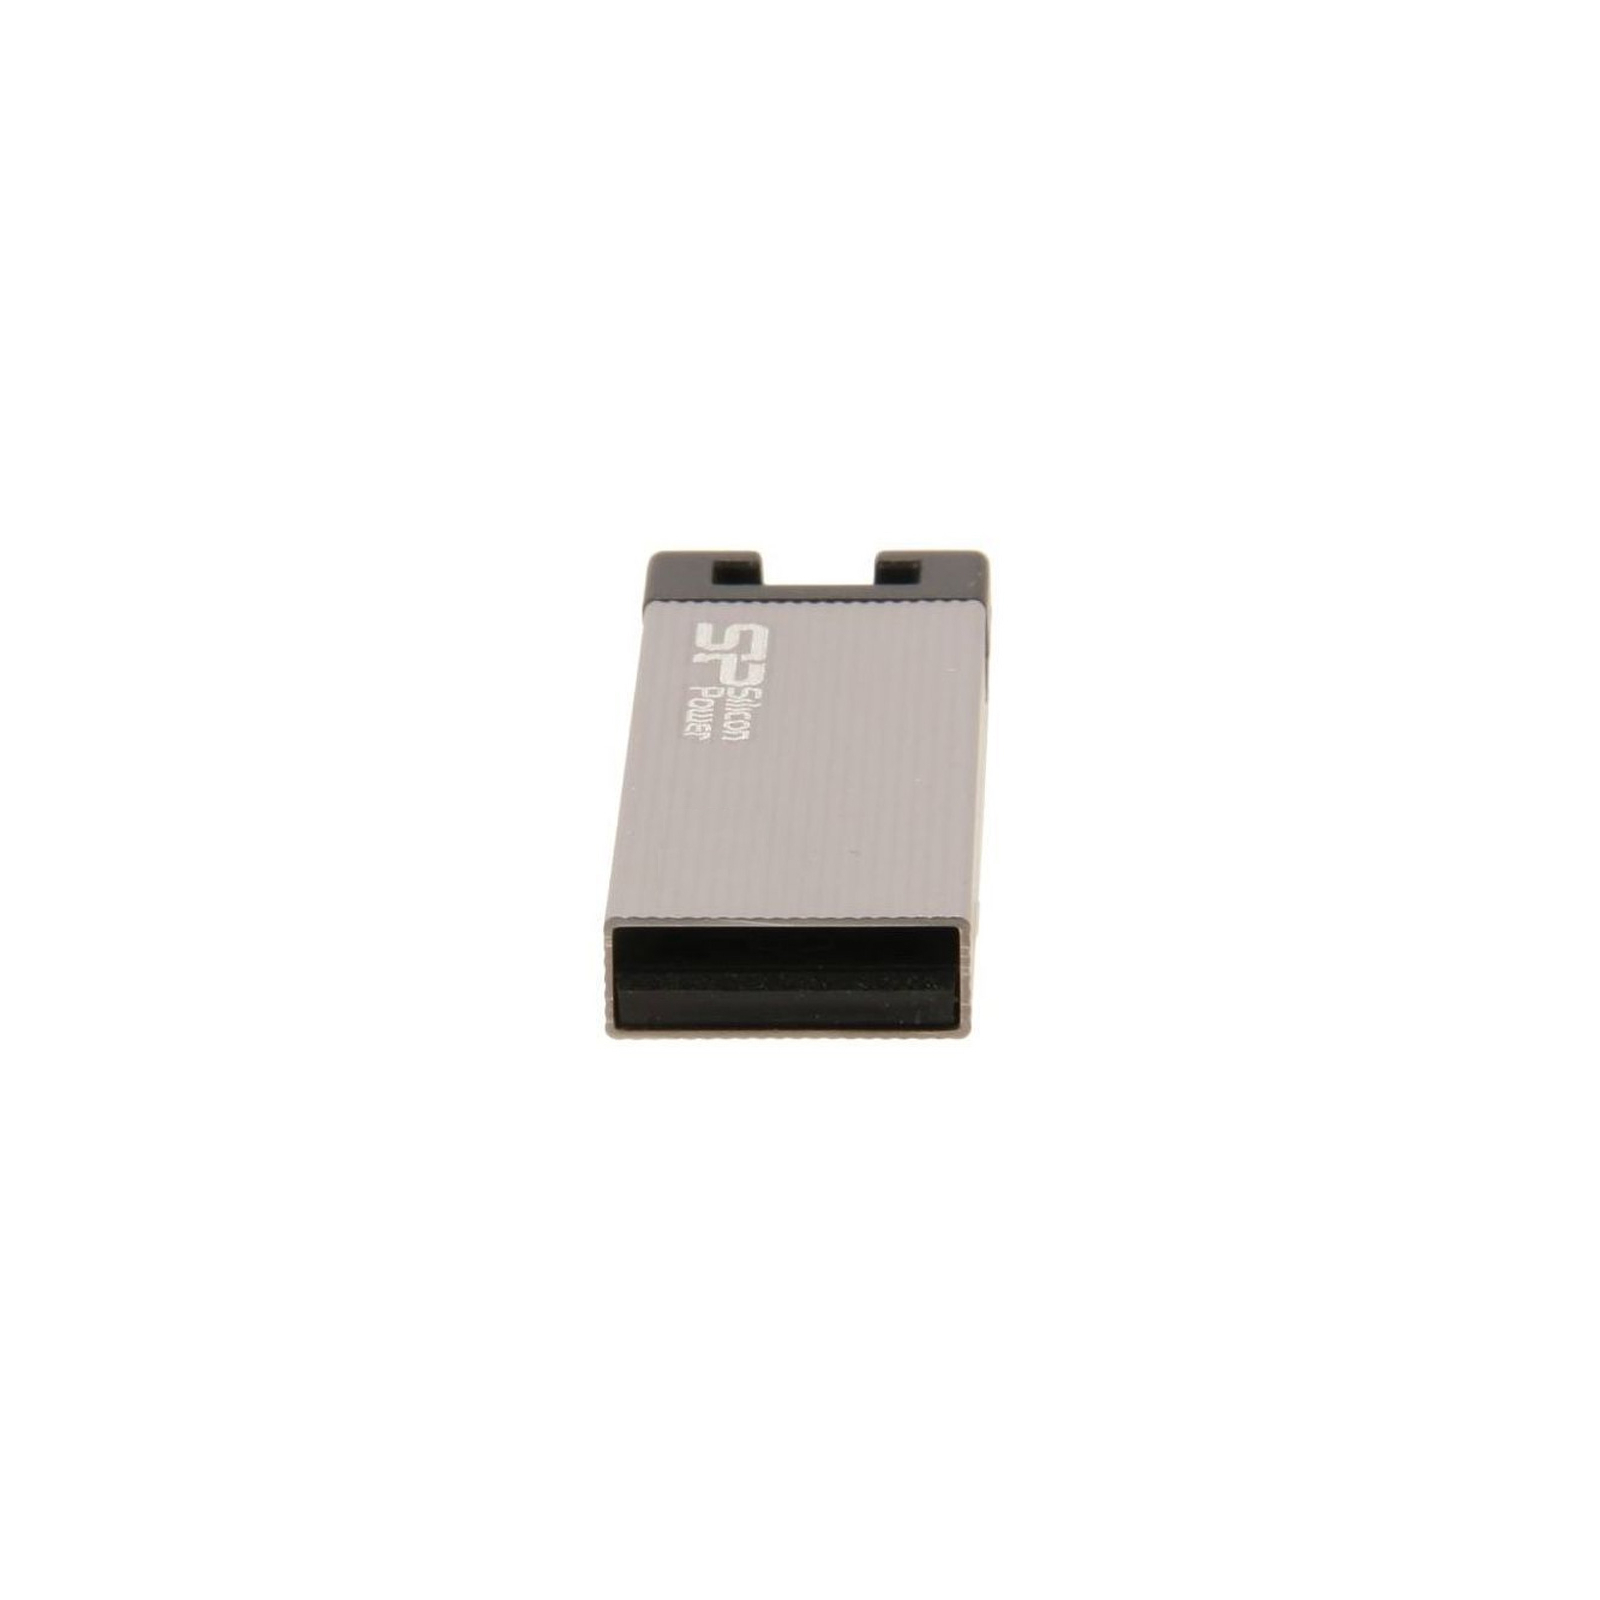 USB флеш накопичувач Silicon Power 8GB Touch 835 USB 2.0 (SP008GBUF2835V1T / SP008GBUF2835V3T) зображення 5